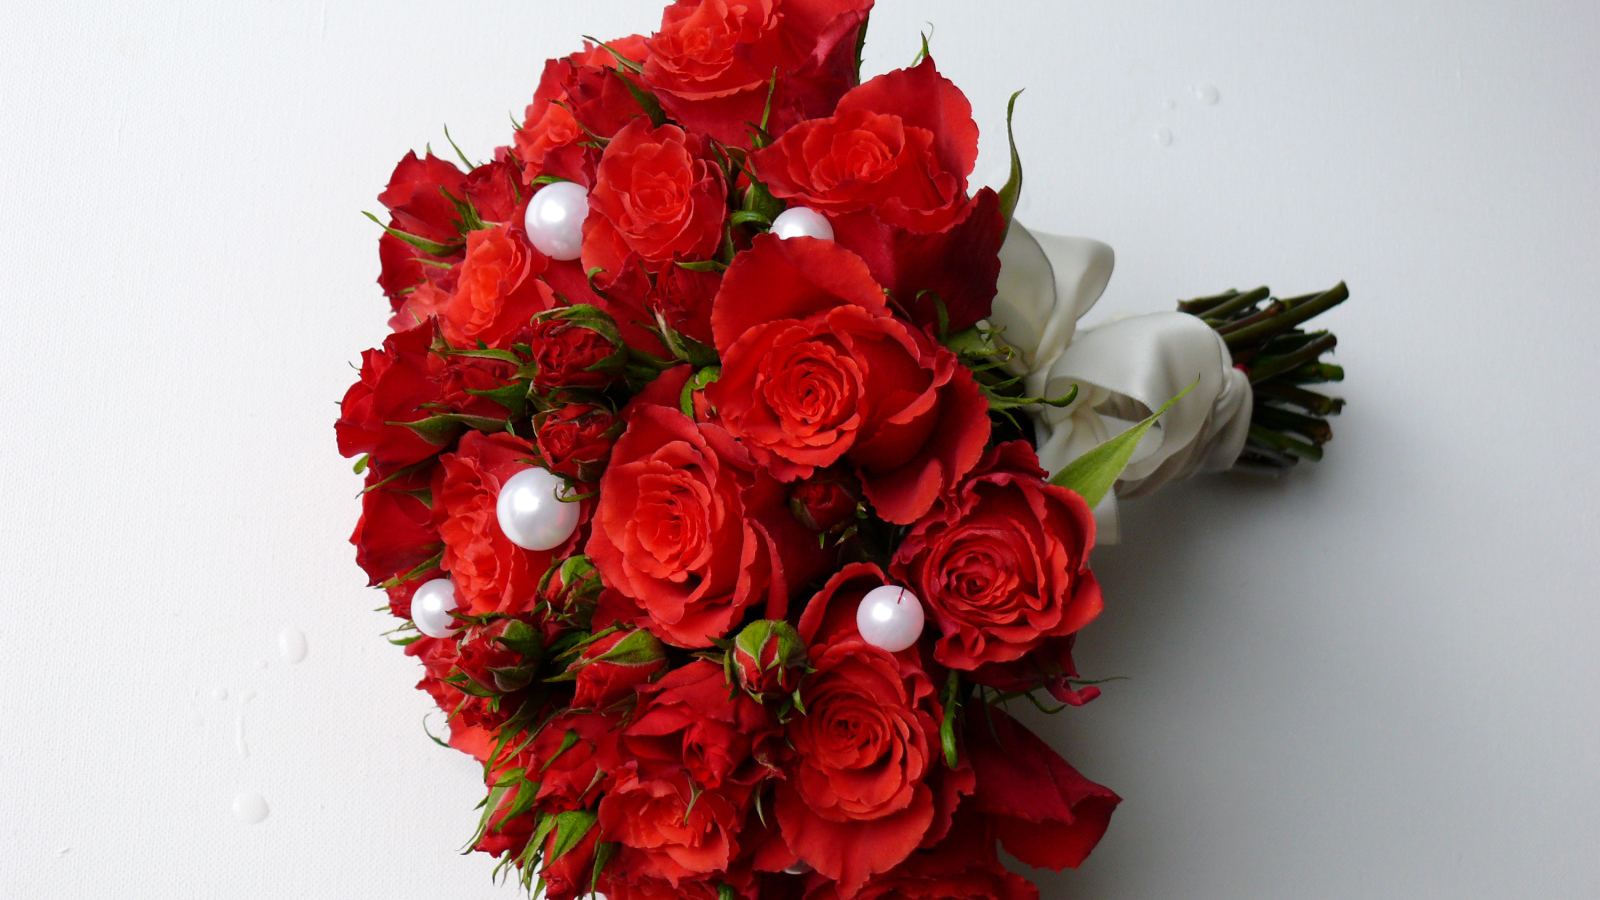 Красивый букет красных роз с жемчужными бусинами на сером фоне